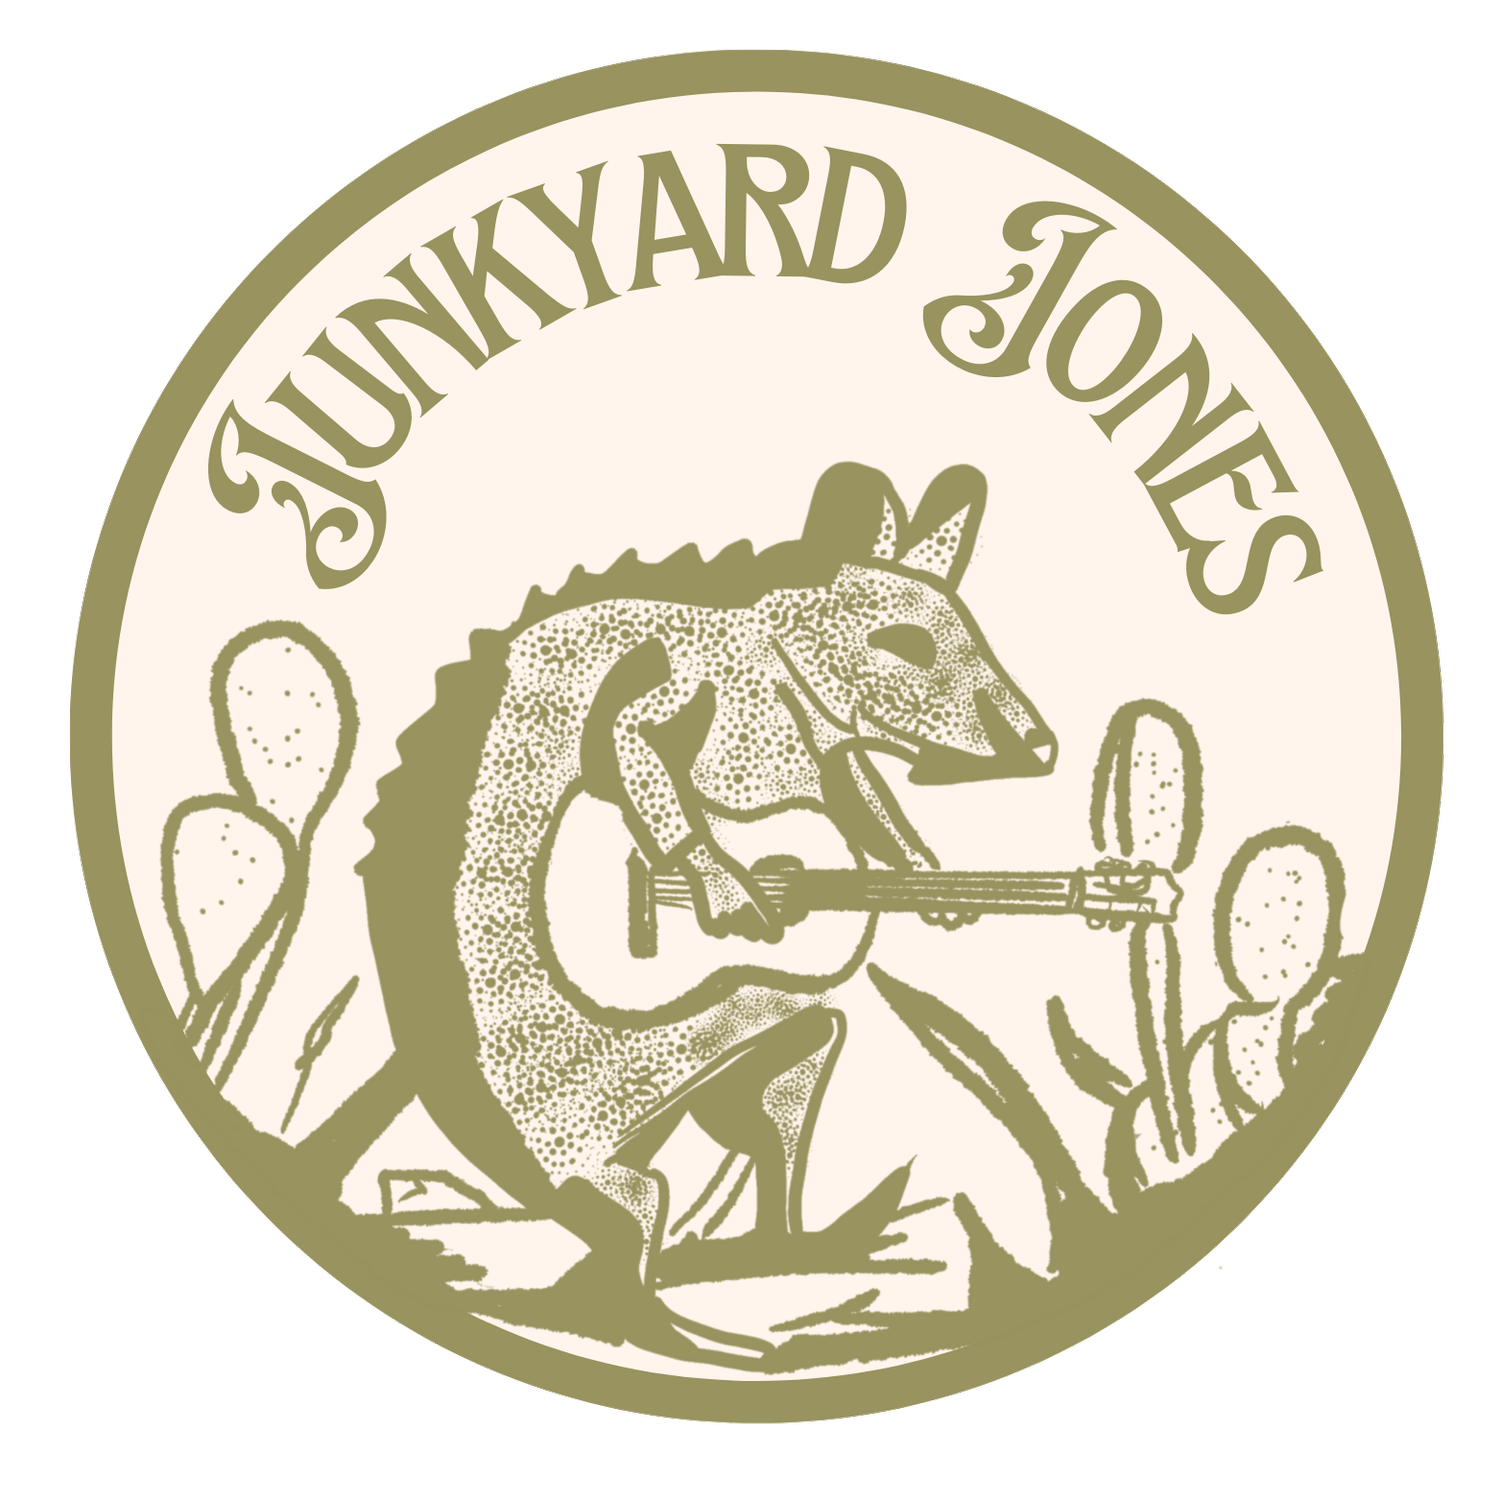 Junkyard Jones